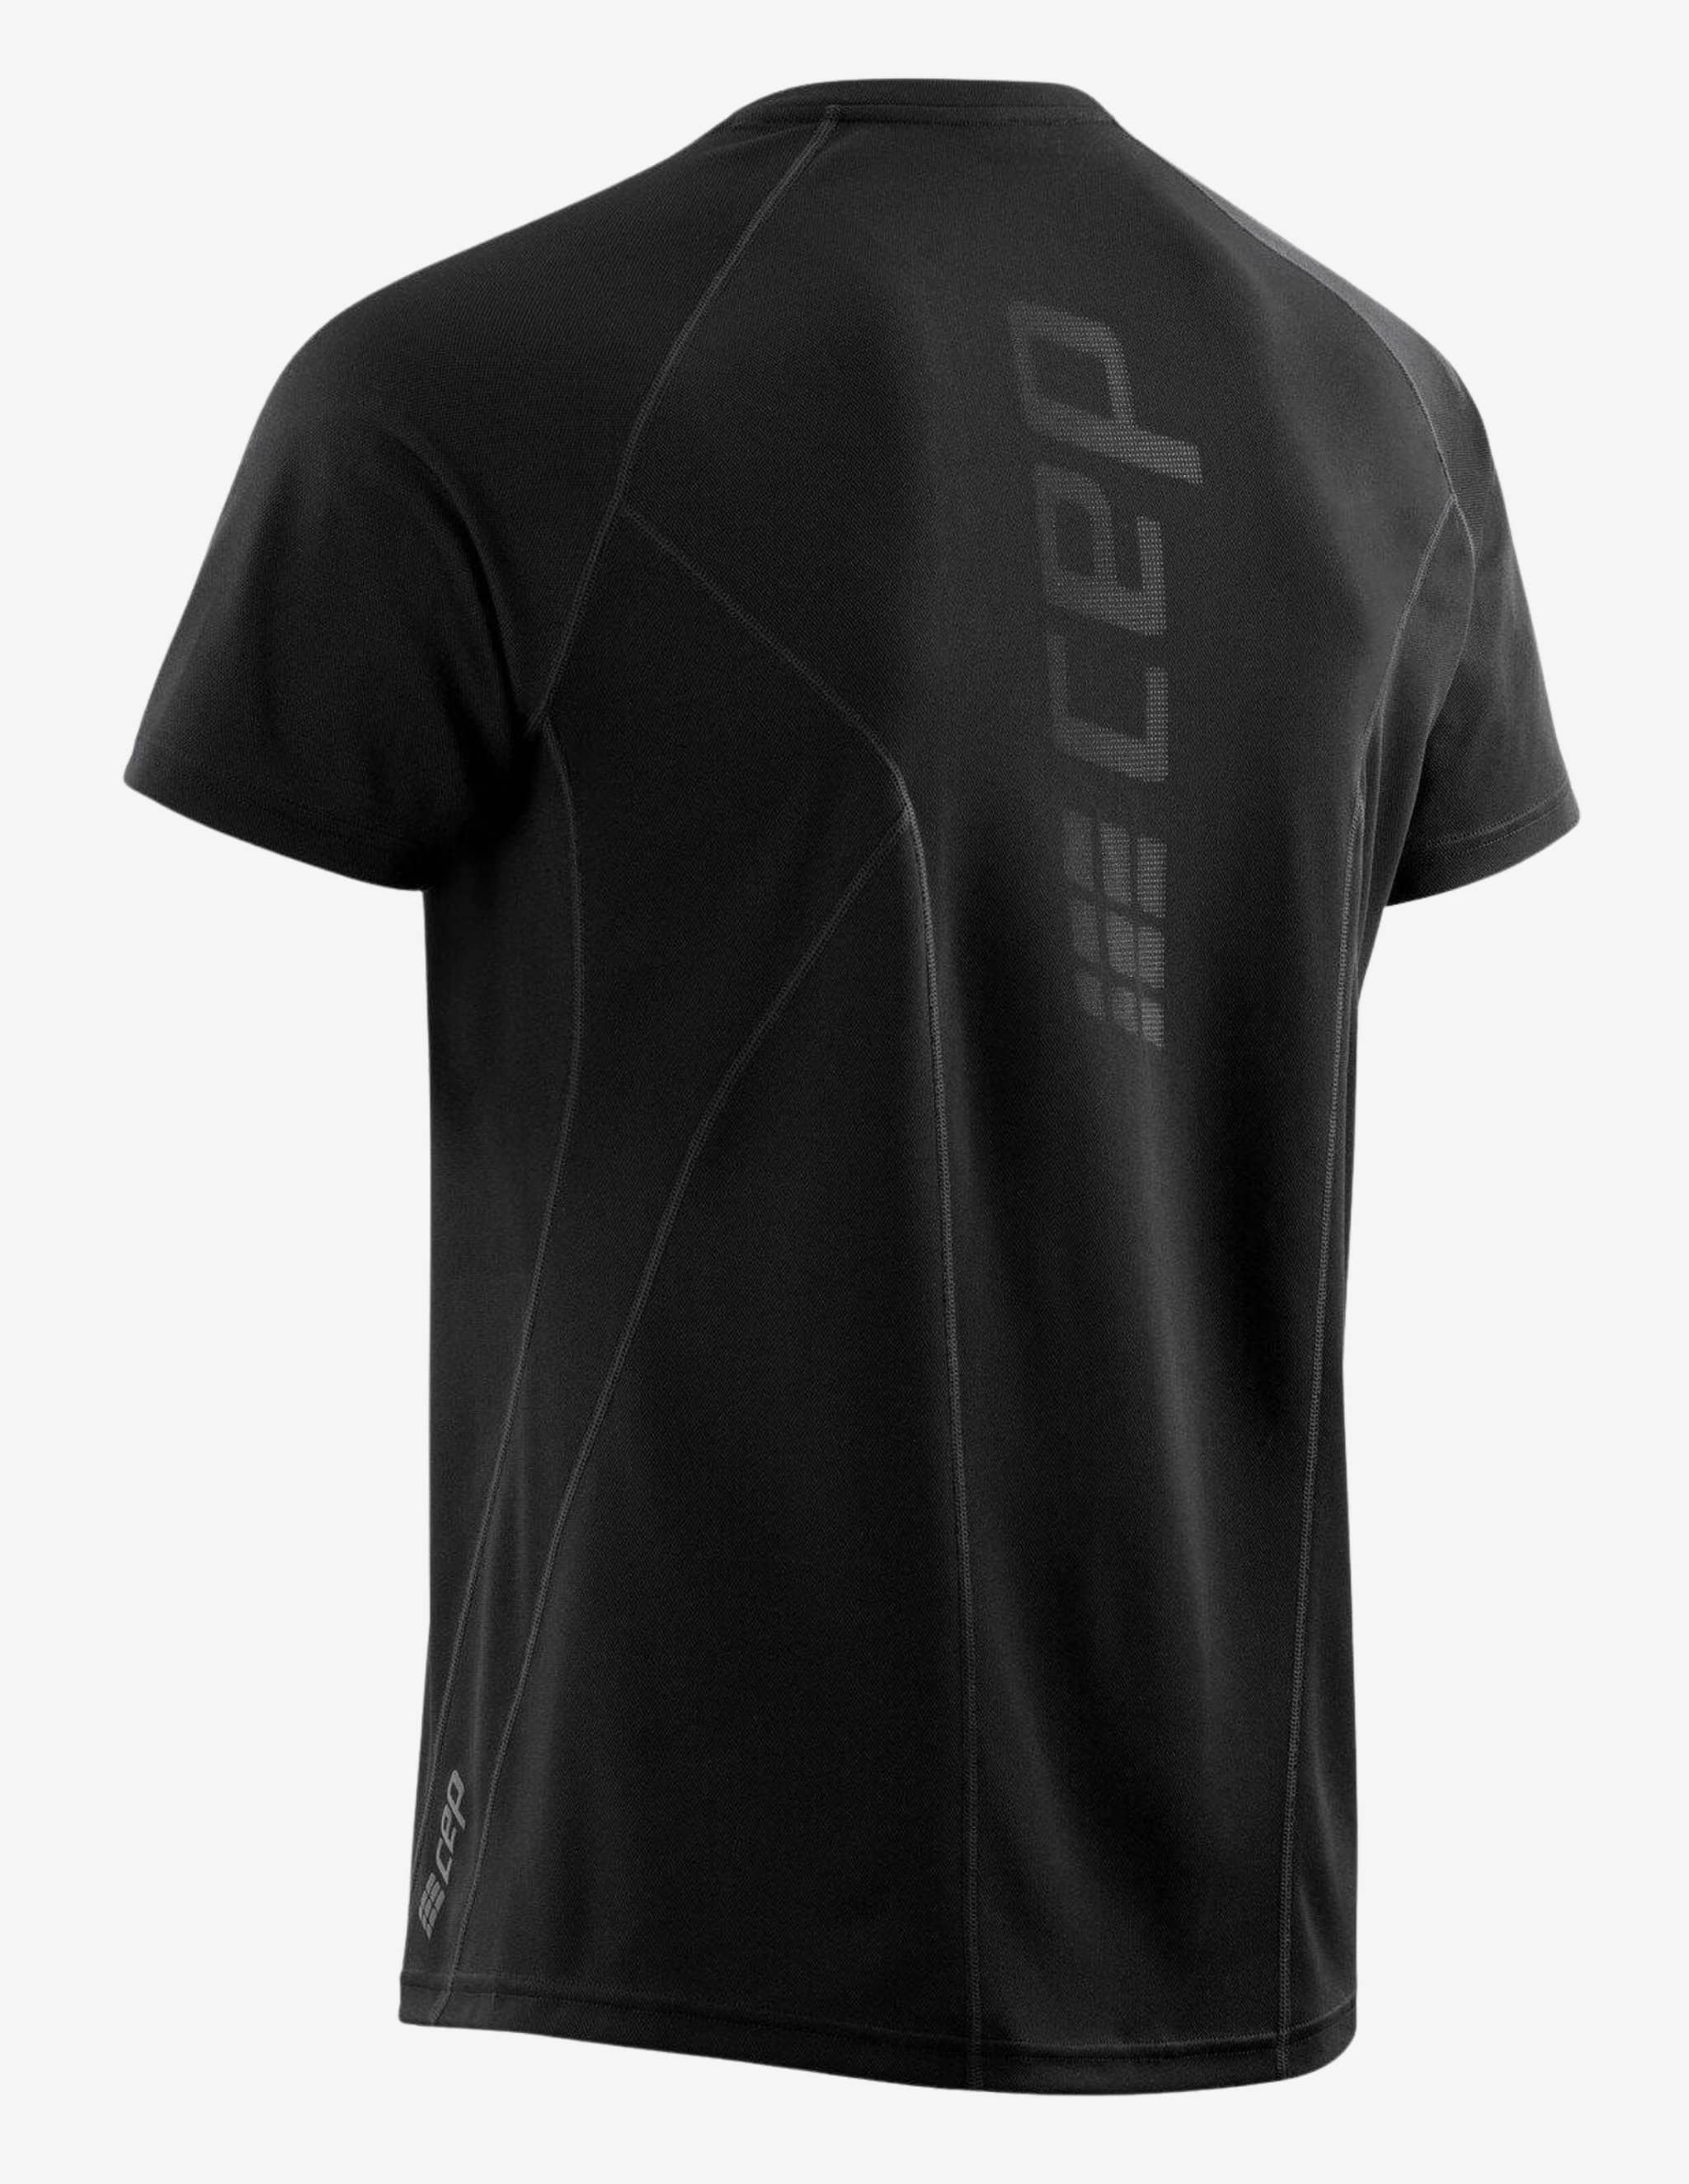 CEP Run Training Shirt Mens-T-shirt Man-CEP Compression-Guru Muscle